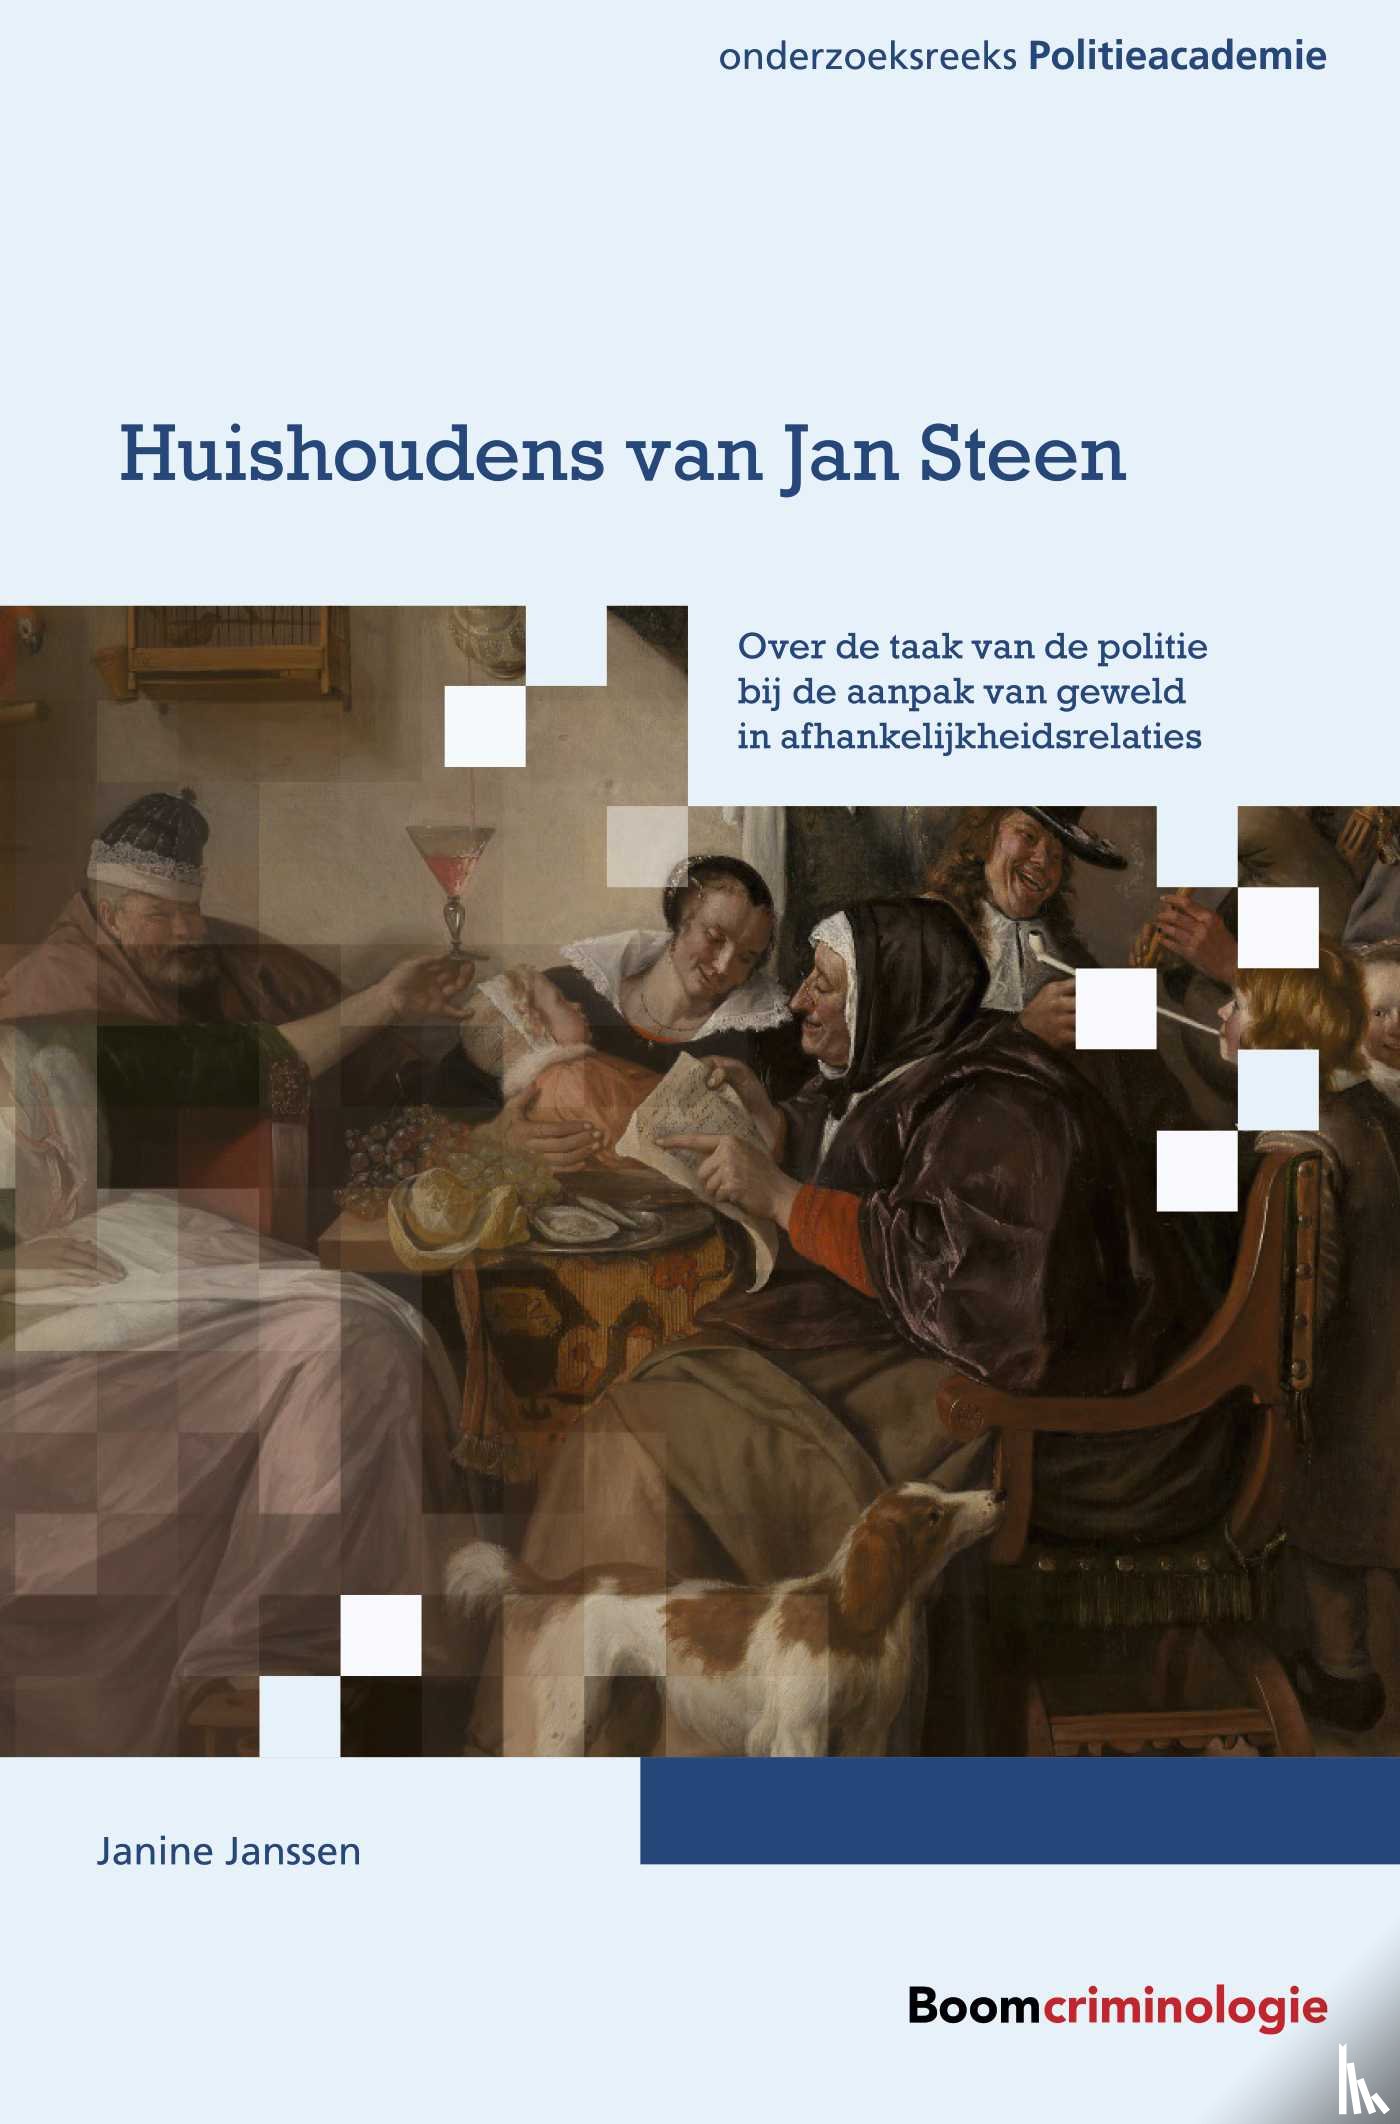 Janssen, Janine - Huishoudens van Jan Steen